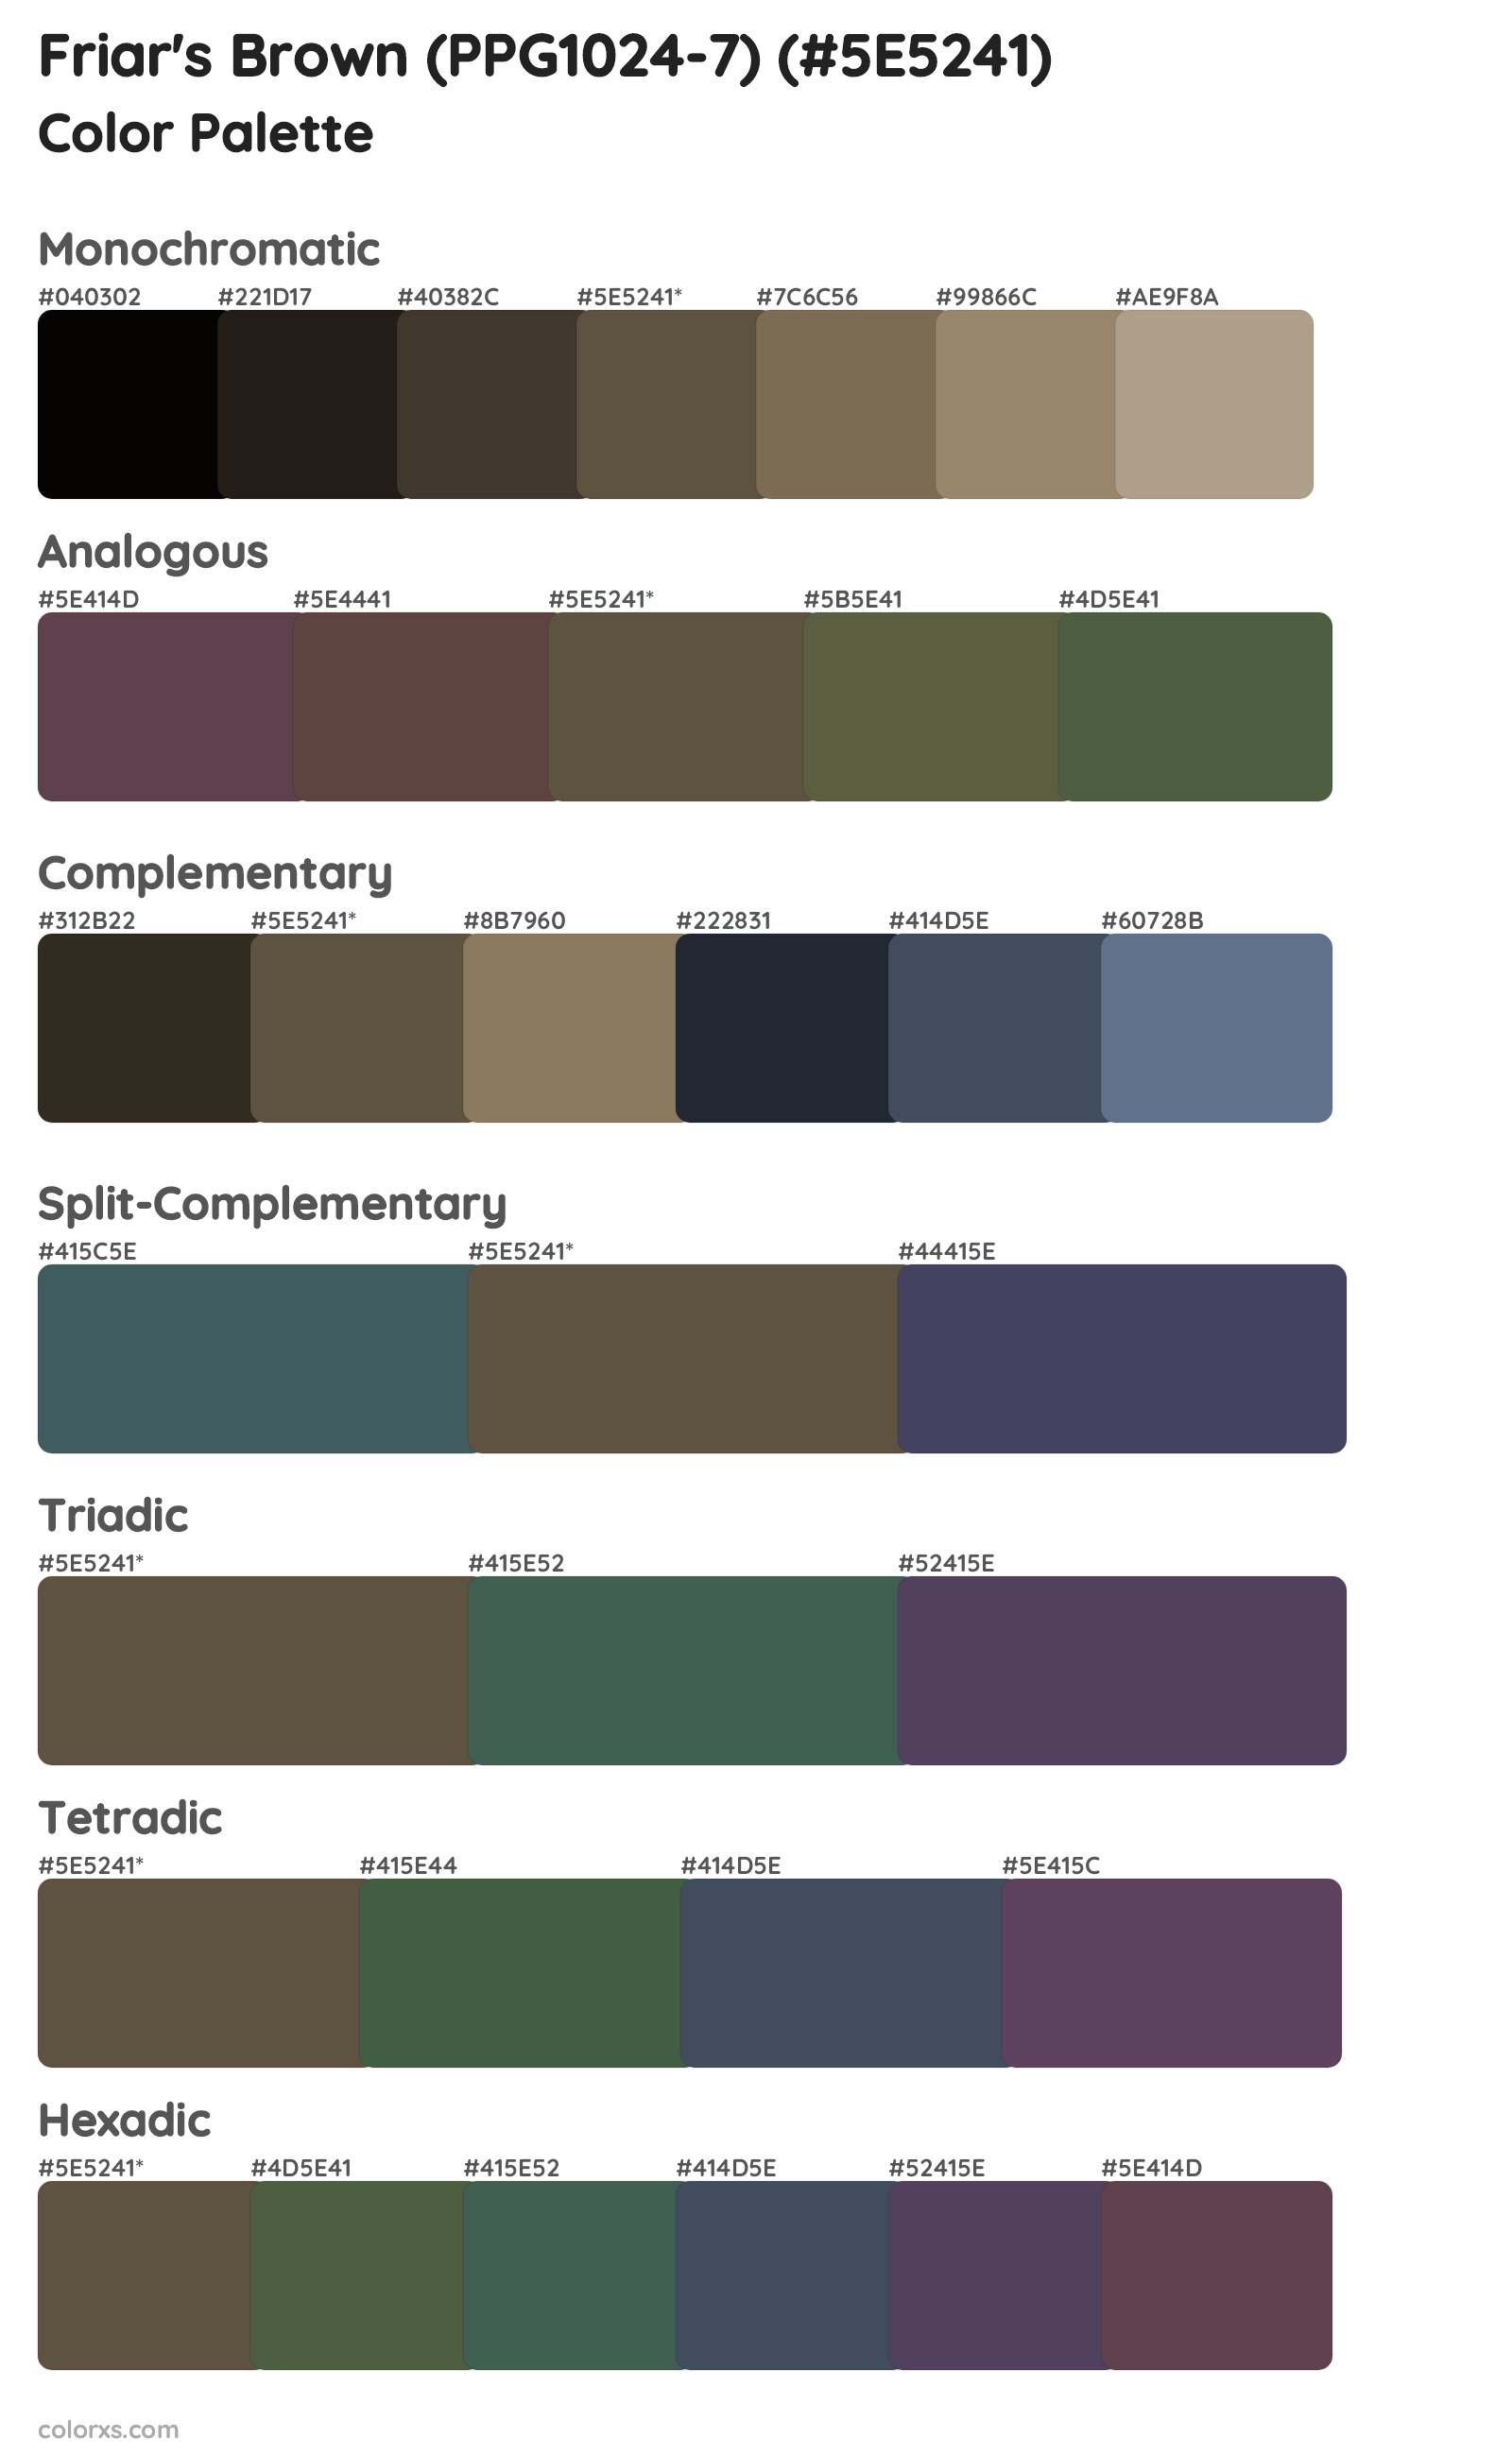 Friar's Brown (PPG1024-7) Color Scheme Palettes